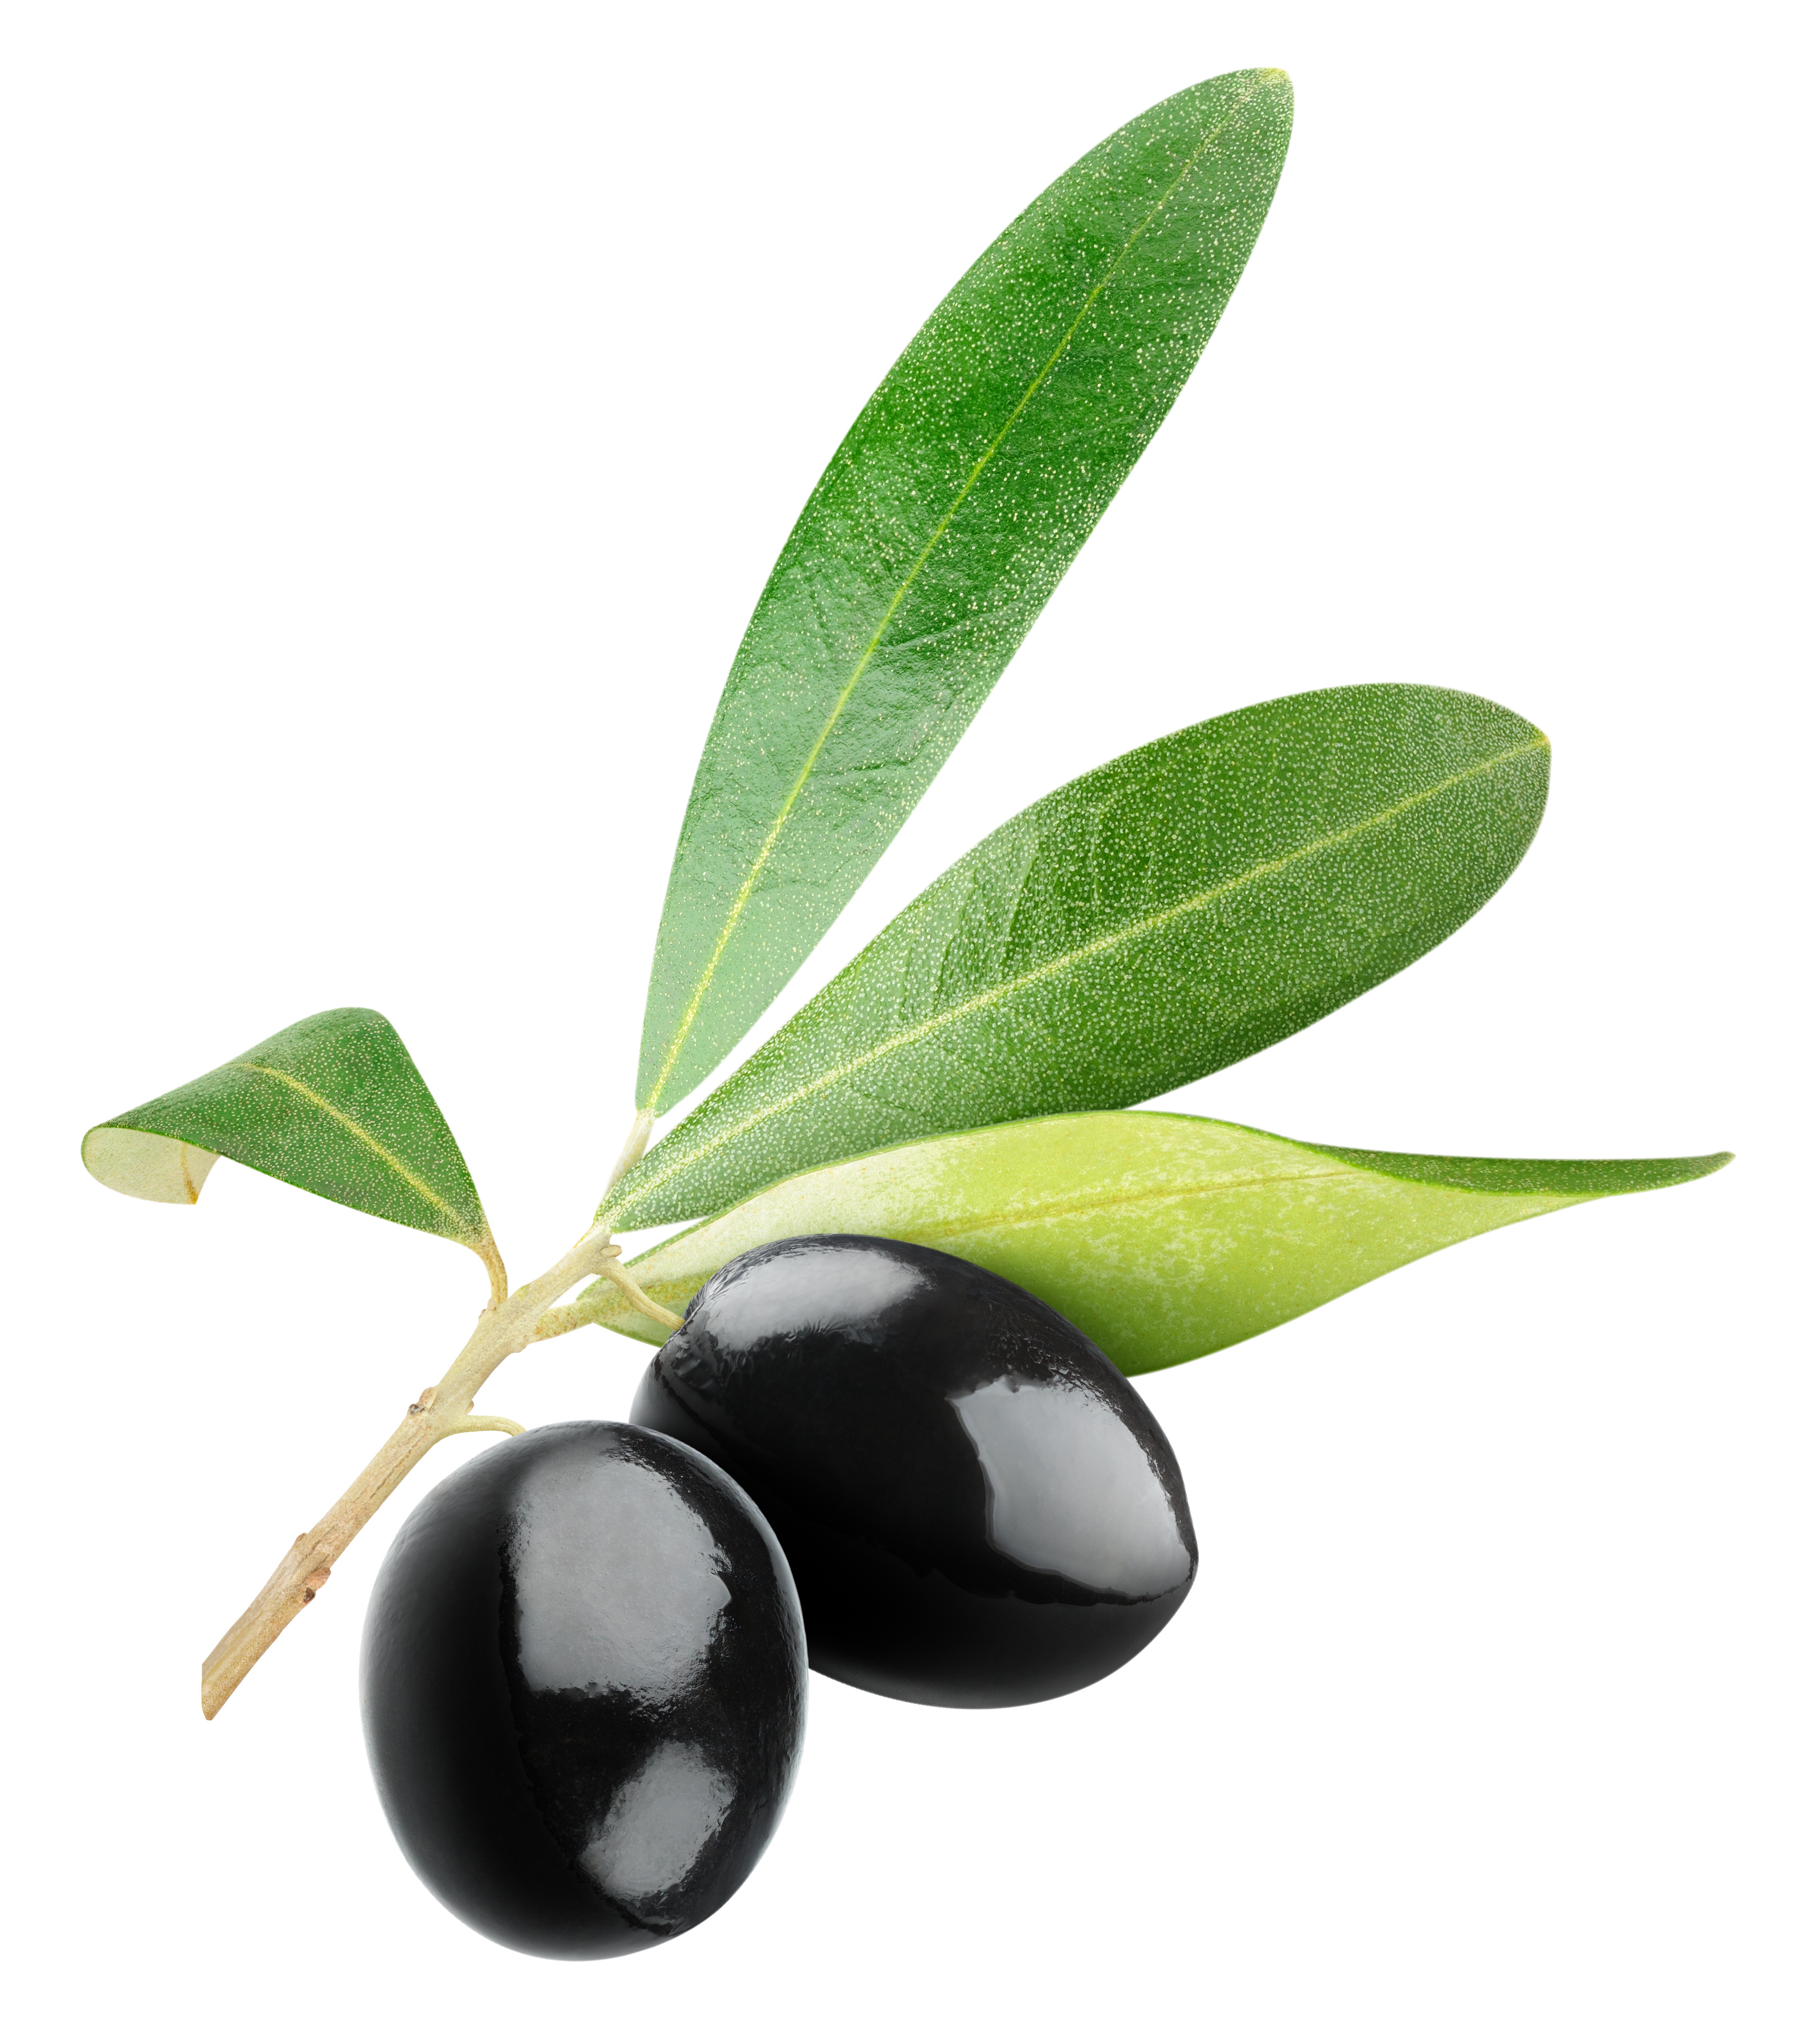 ... A branch of black olives.